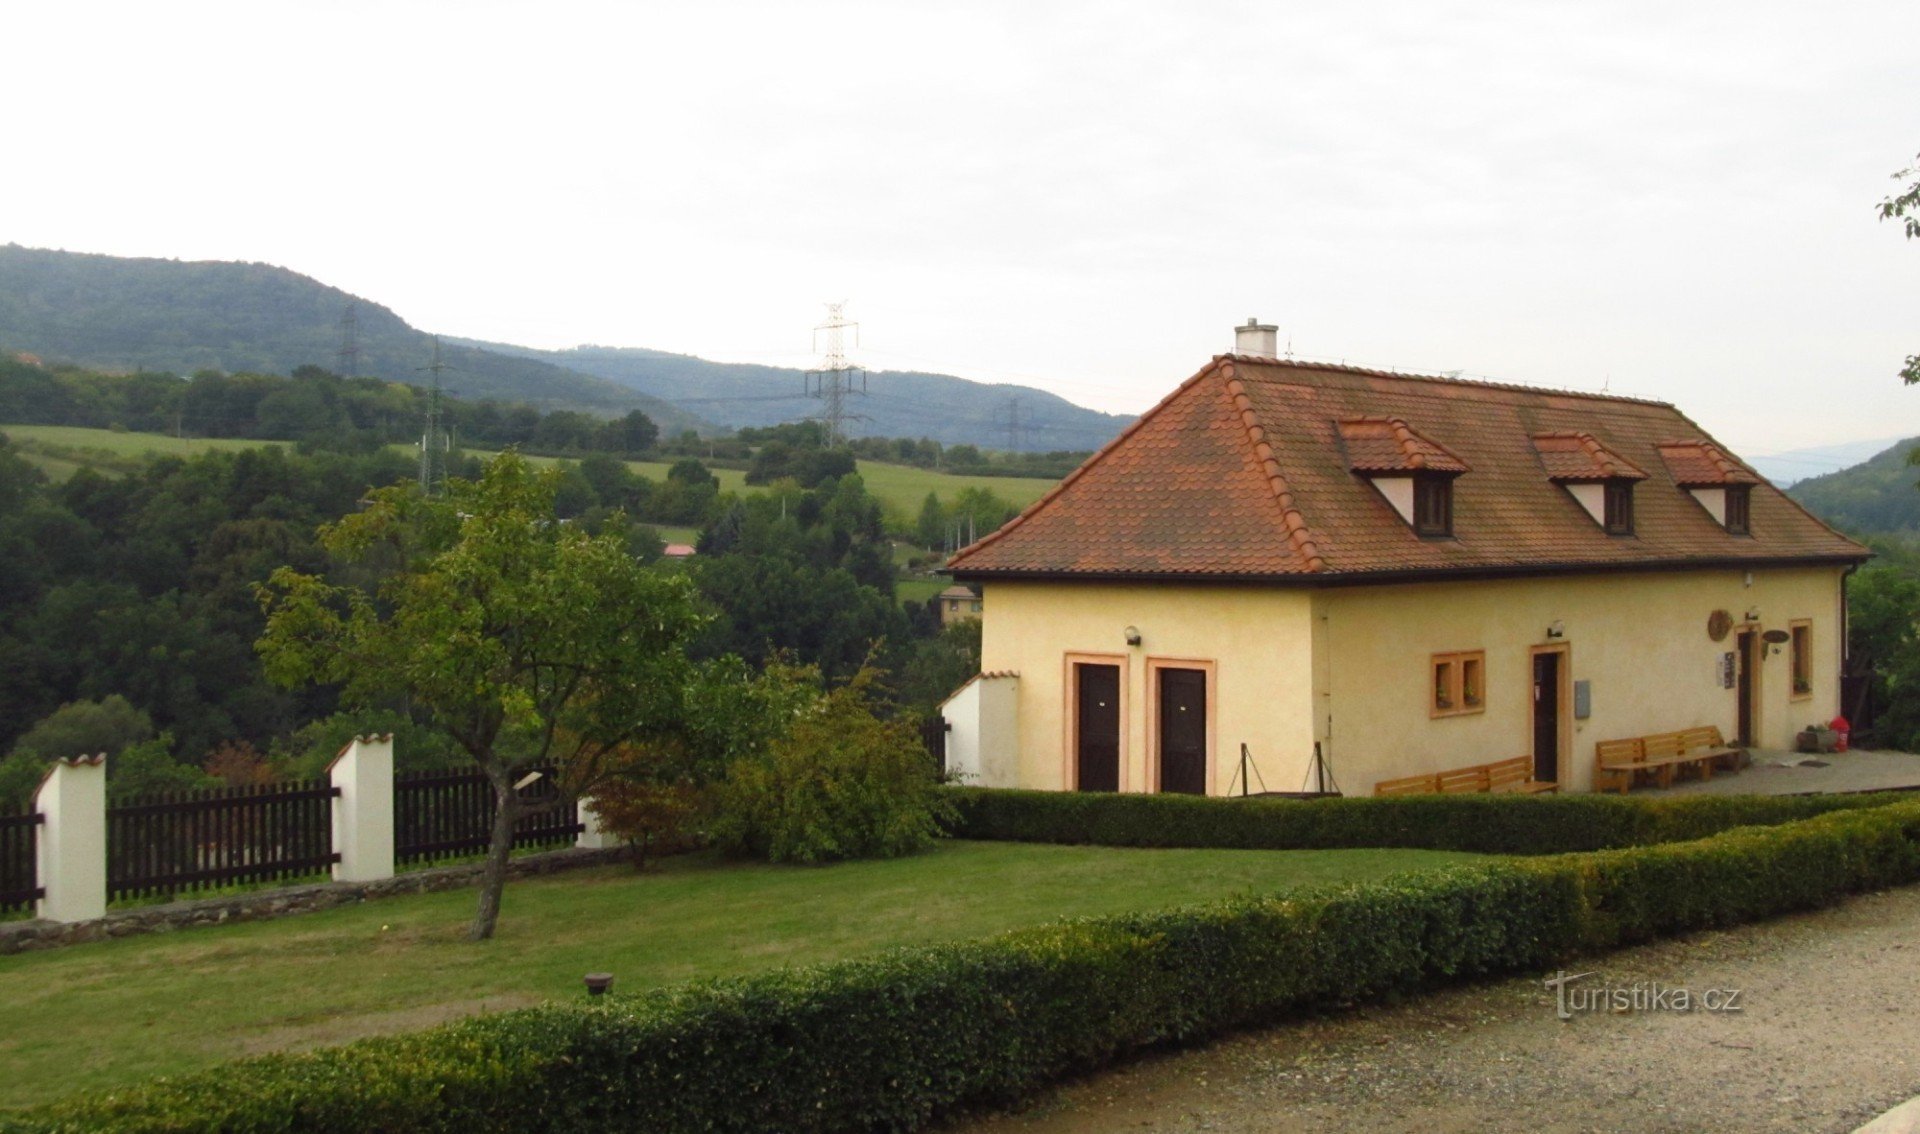 Φραγκισκανικό μοναστήρι στο εστιατόριο Kadani - Konírna